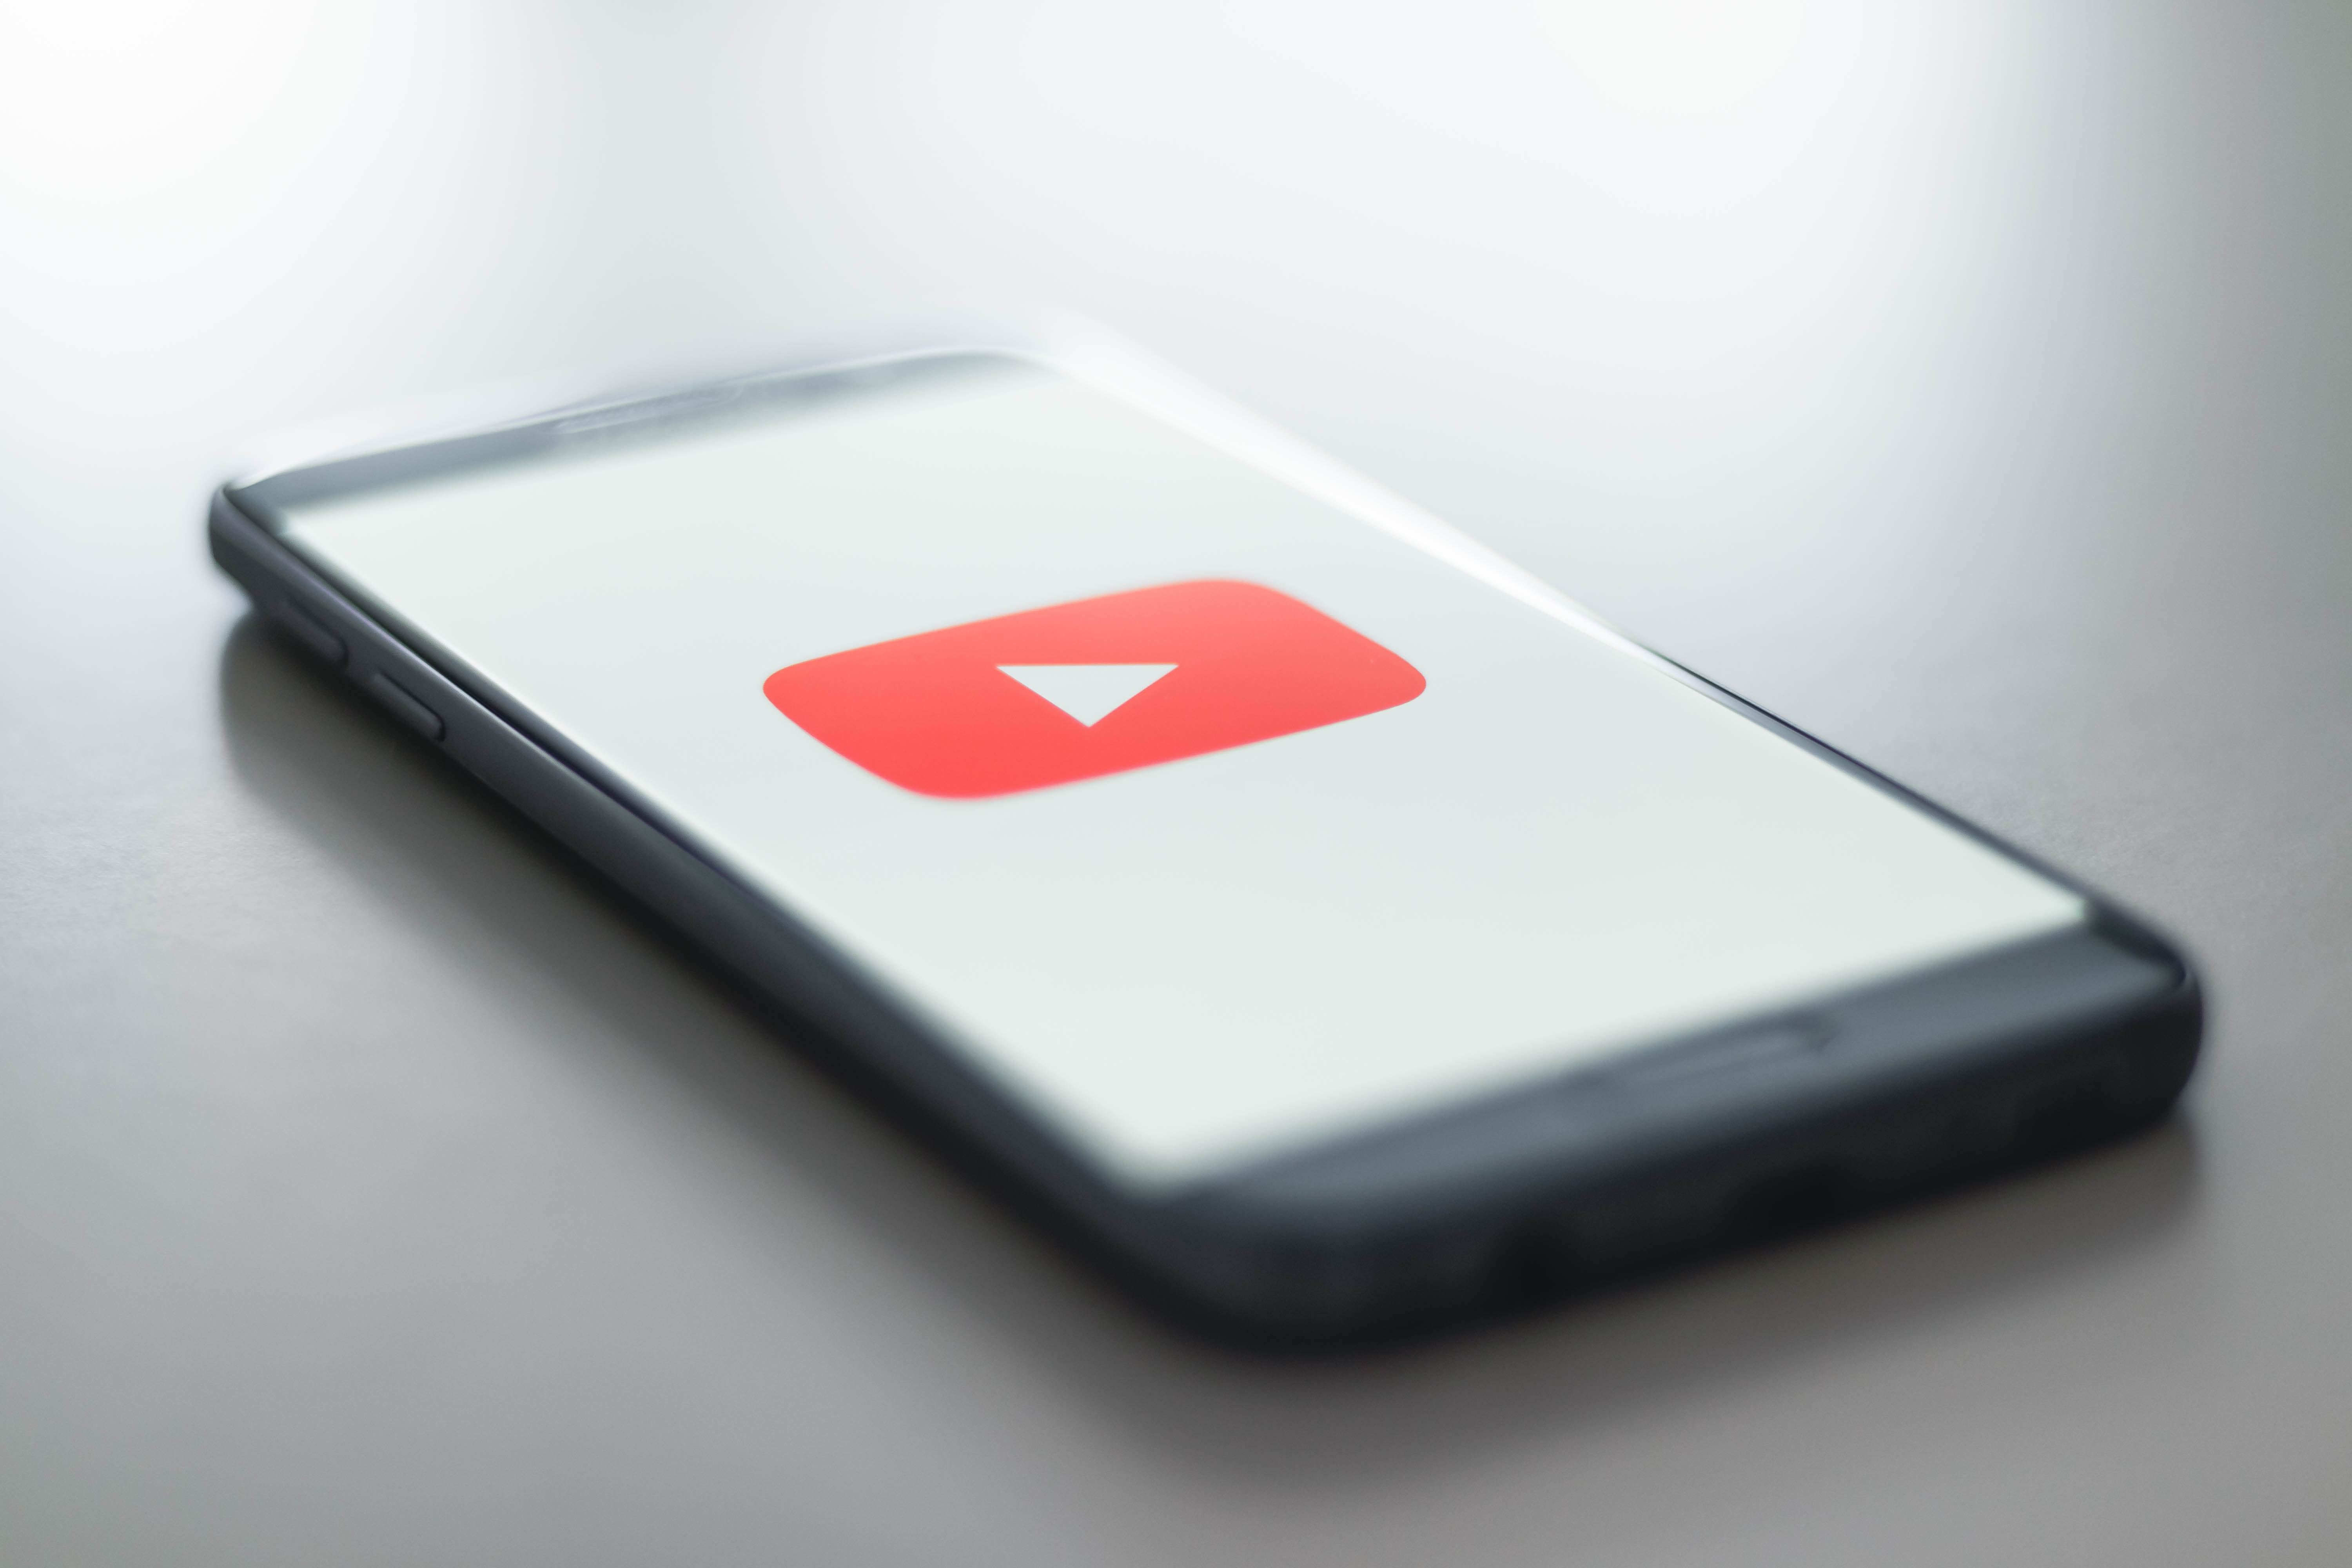 YouTube generated over $5 billion in ad revenue in Q3 2020 alone